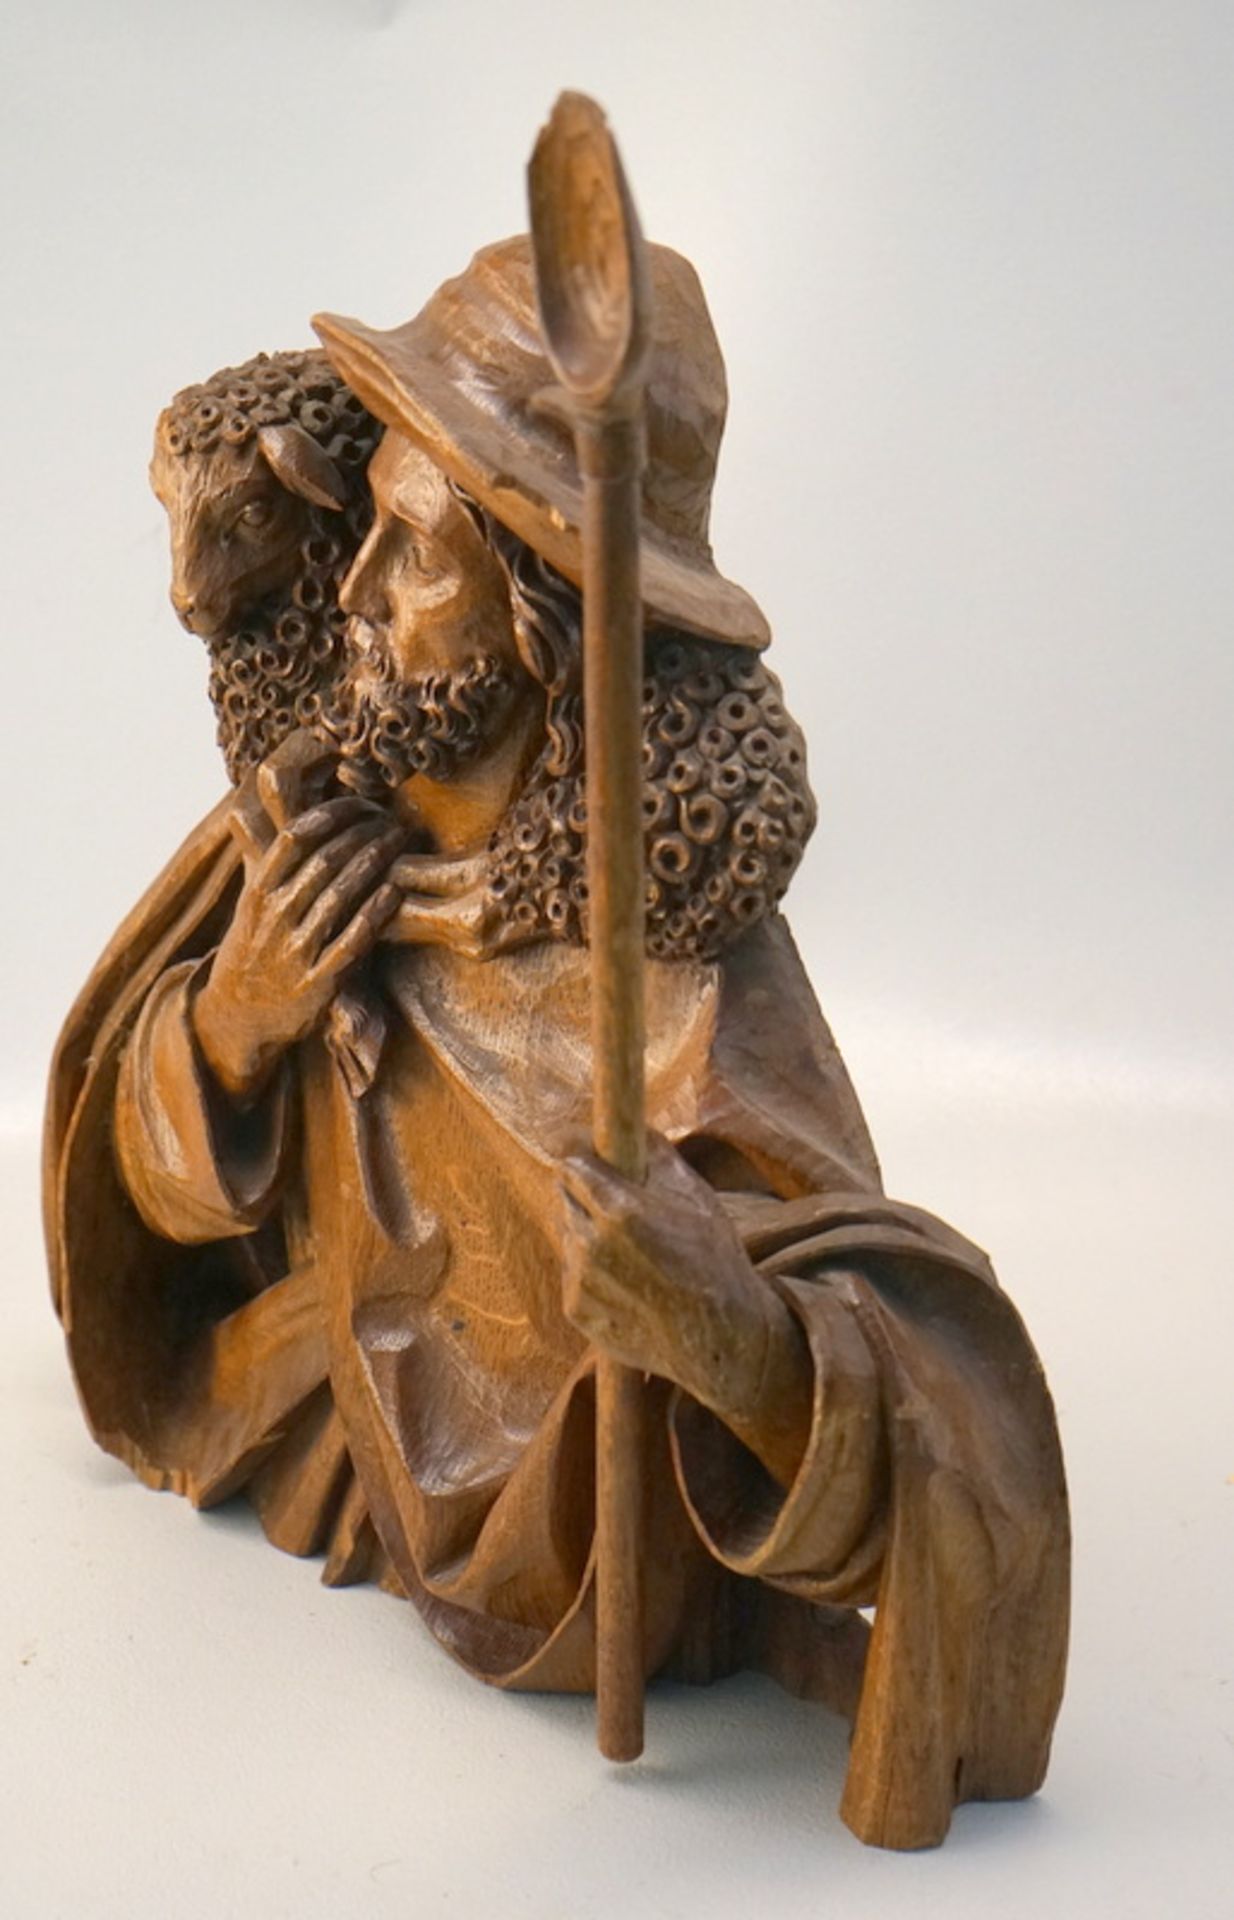 Kanzelfigur Christus als Schäfer - Image 6 of 8